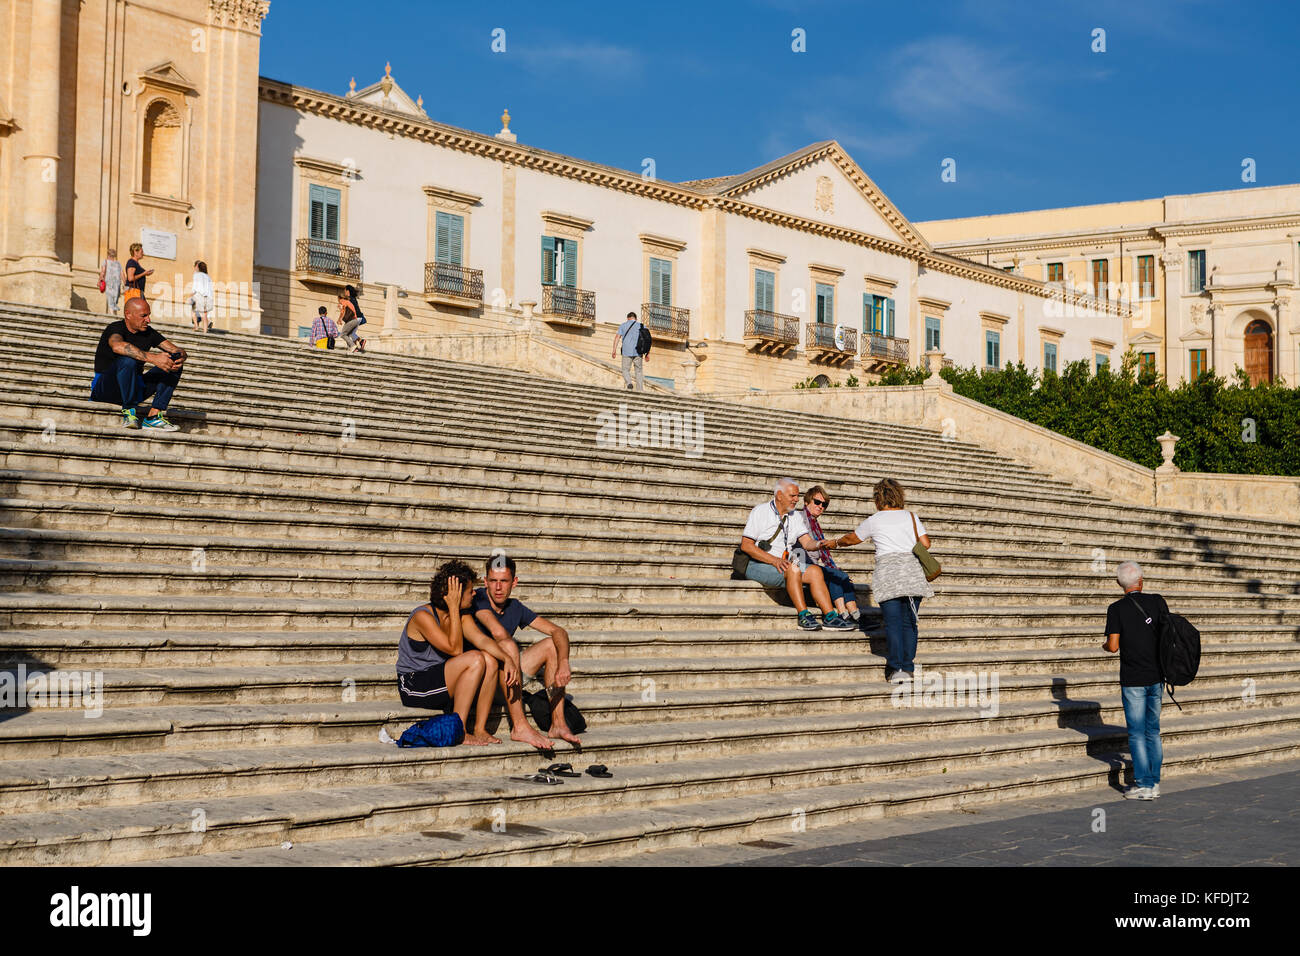 Noto, Sicile, Italie - le 27 septembre 2017 : les touristes se reposant après visite de la célèbre cathédrale de noto construit dans le style du baroque sicilien Banque D'Images